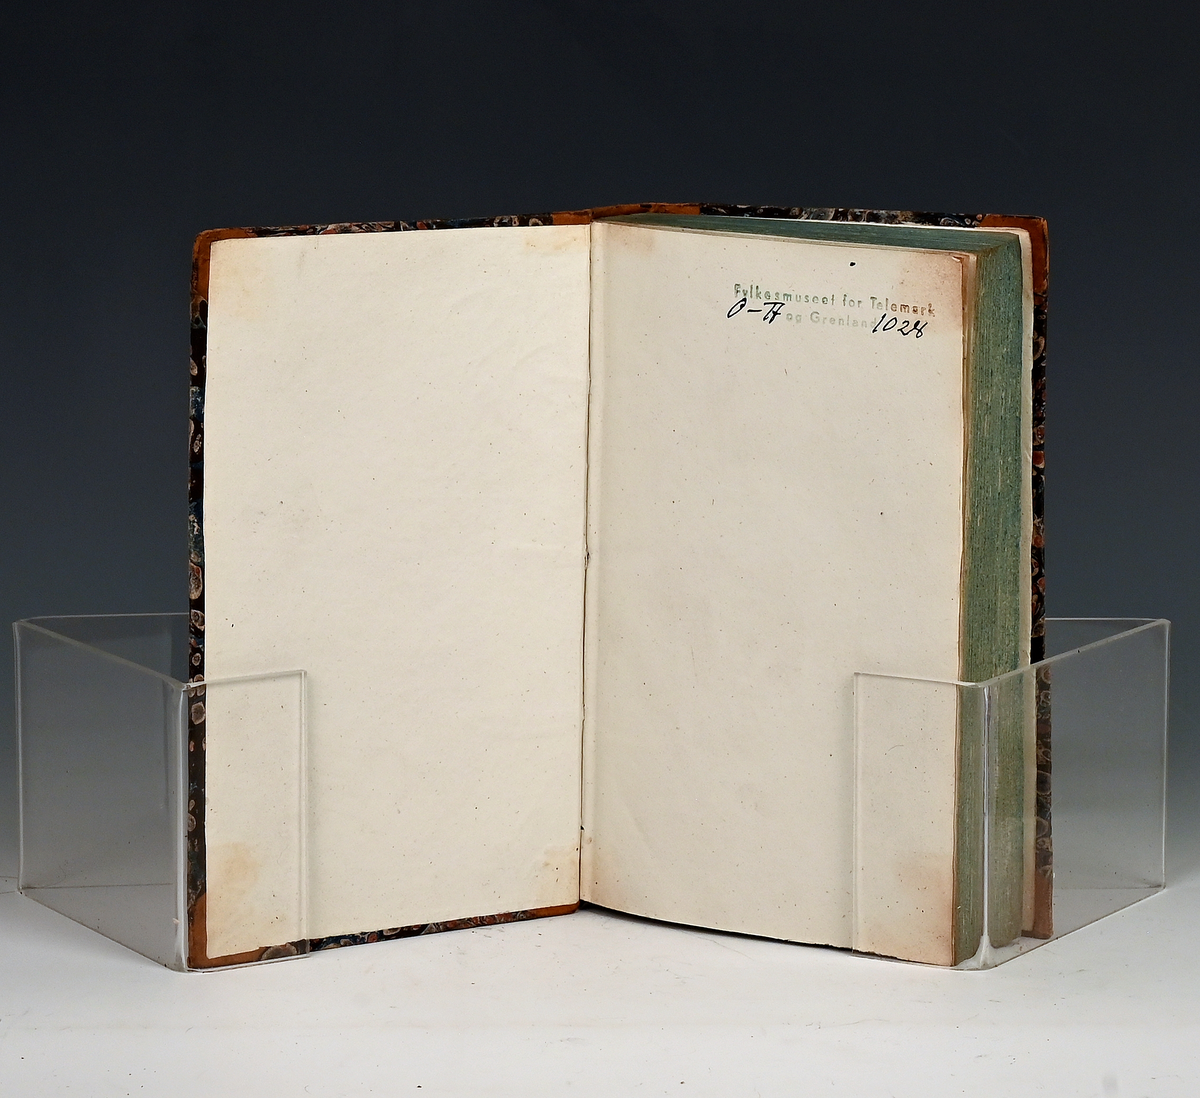 Maanedsskrift for litteratur. Tredie bind. Kbhv. 1830.
